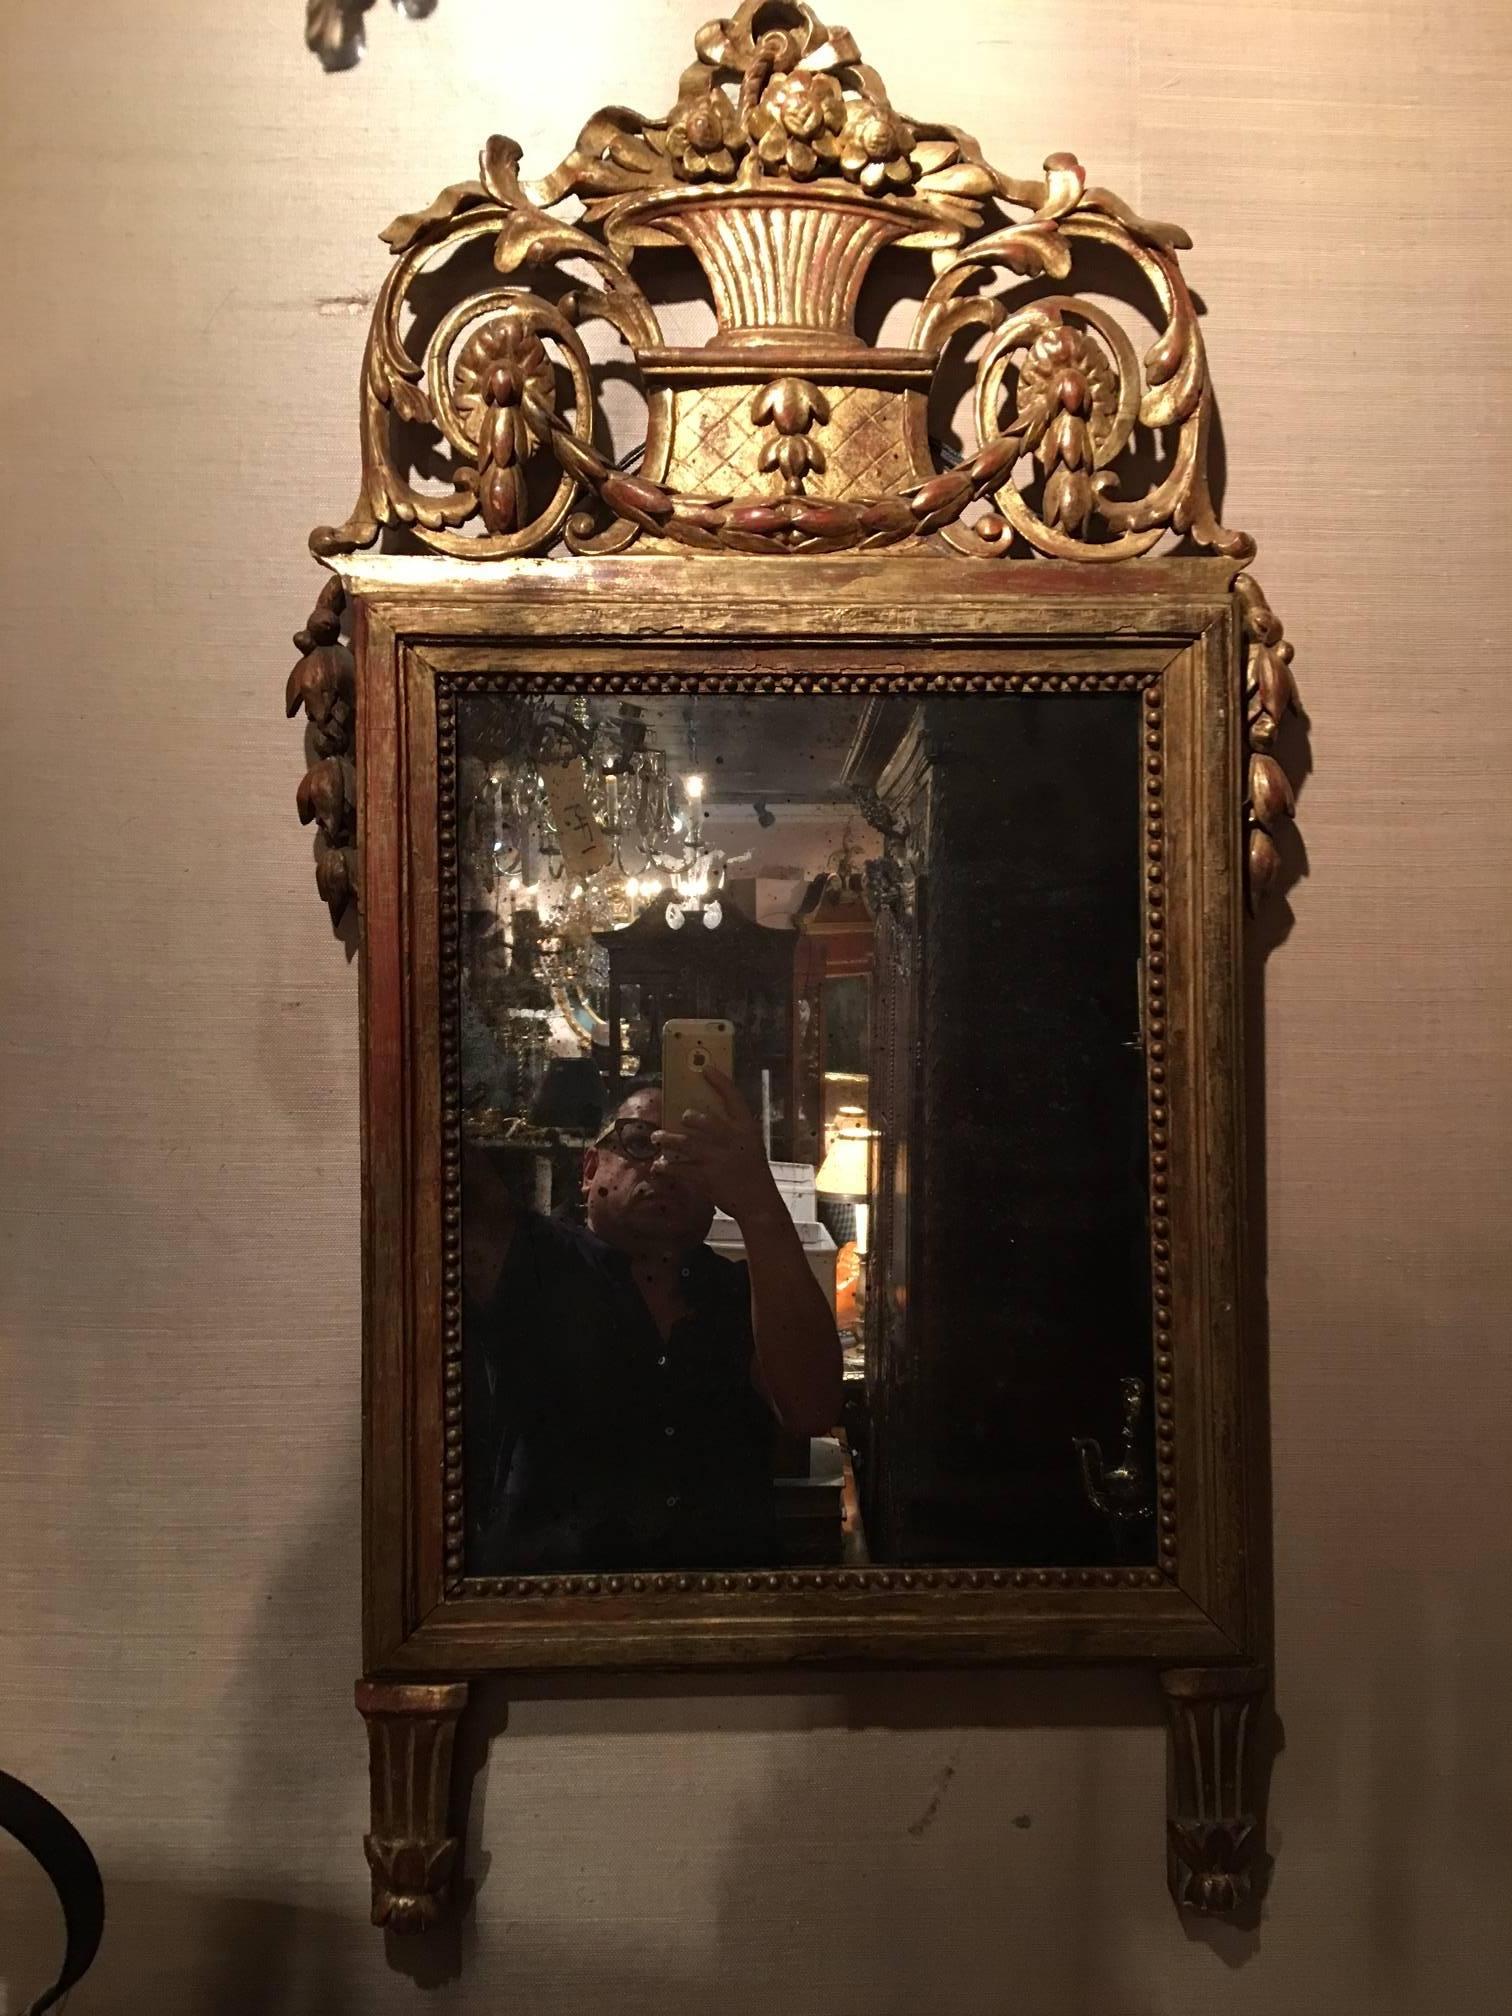 Miroir italien en bois doré de style Louis XVI, 19e siècle, avec des guirlandes de fleurs en forme de cloche et une plaque de miroir rectangulaire.